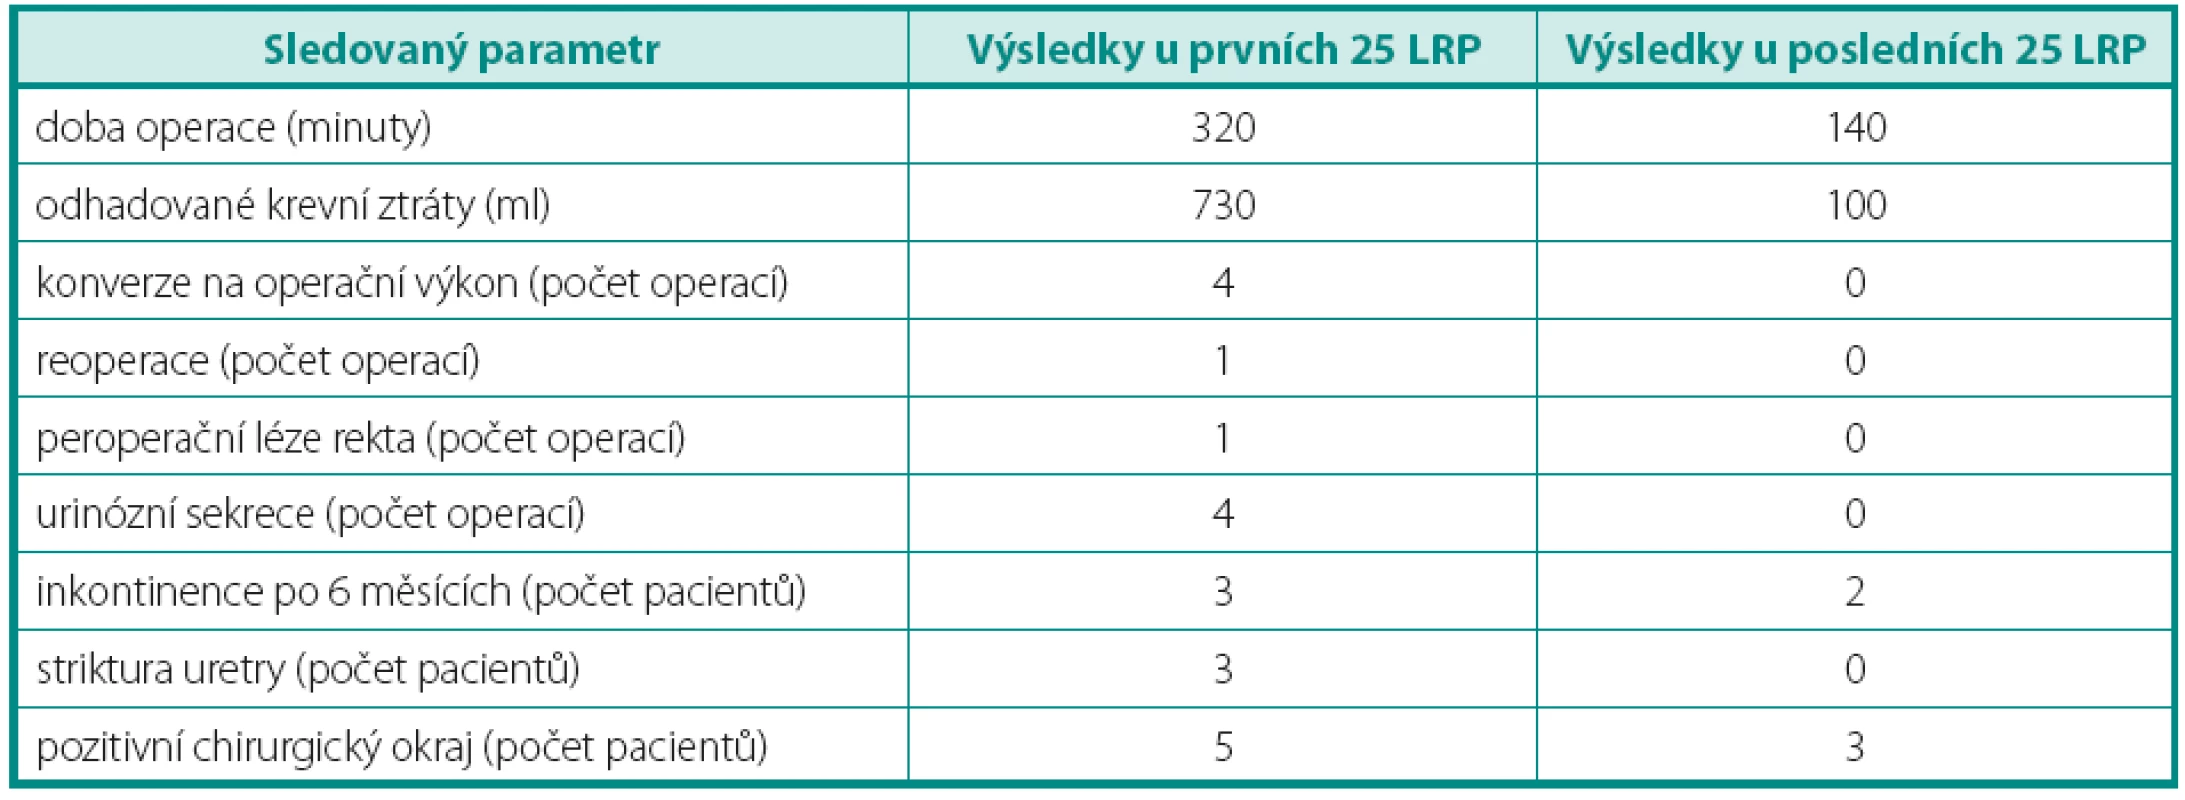 Srovnání výsledků první a posledních 25 LRP
Table 2. The comparison of the first and last 25 LRP